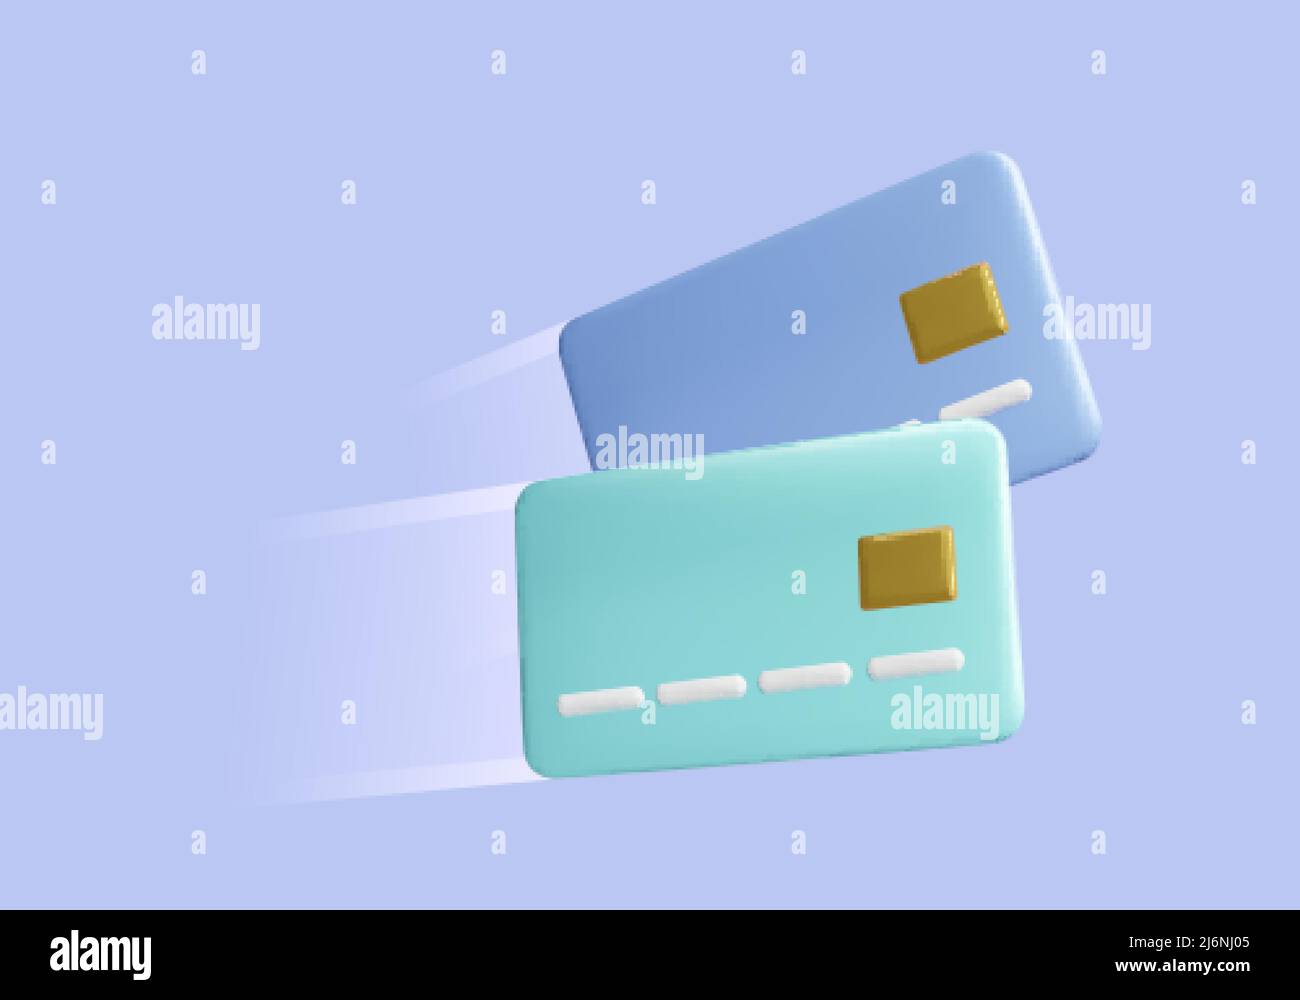 3D tarjeta de crédito estilo caricatura. Elemento de diseño empresarial. Concepto de reembolso o transacción de dinero de la tarjeta de crédito Flyinf. Ilustración vectorial Ilustración del Vector